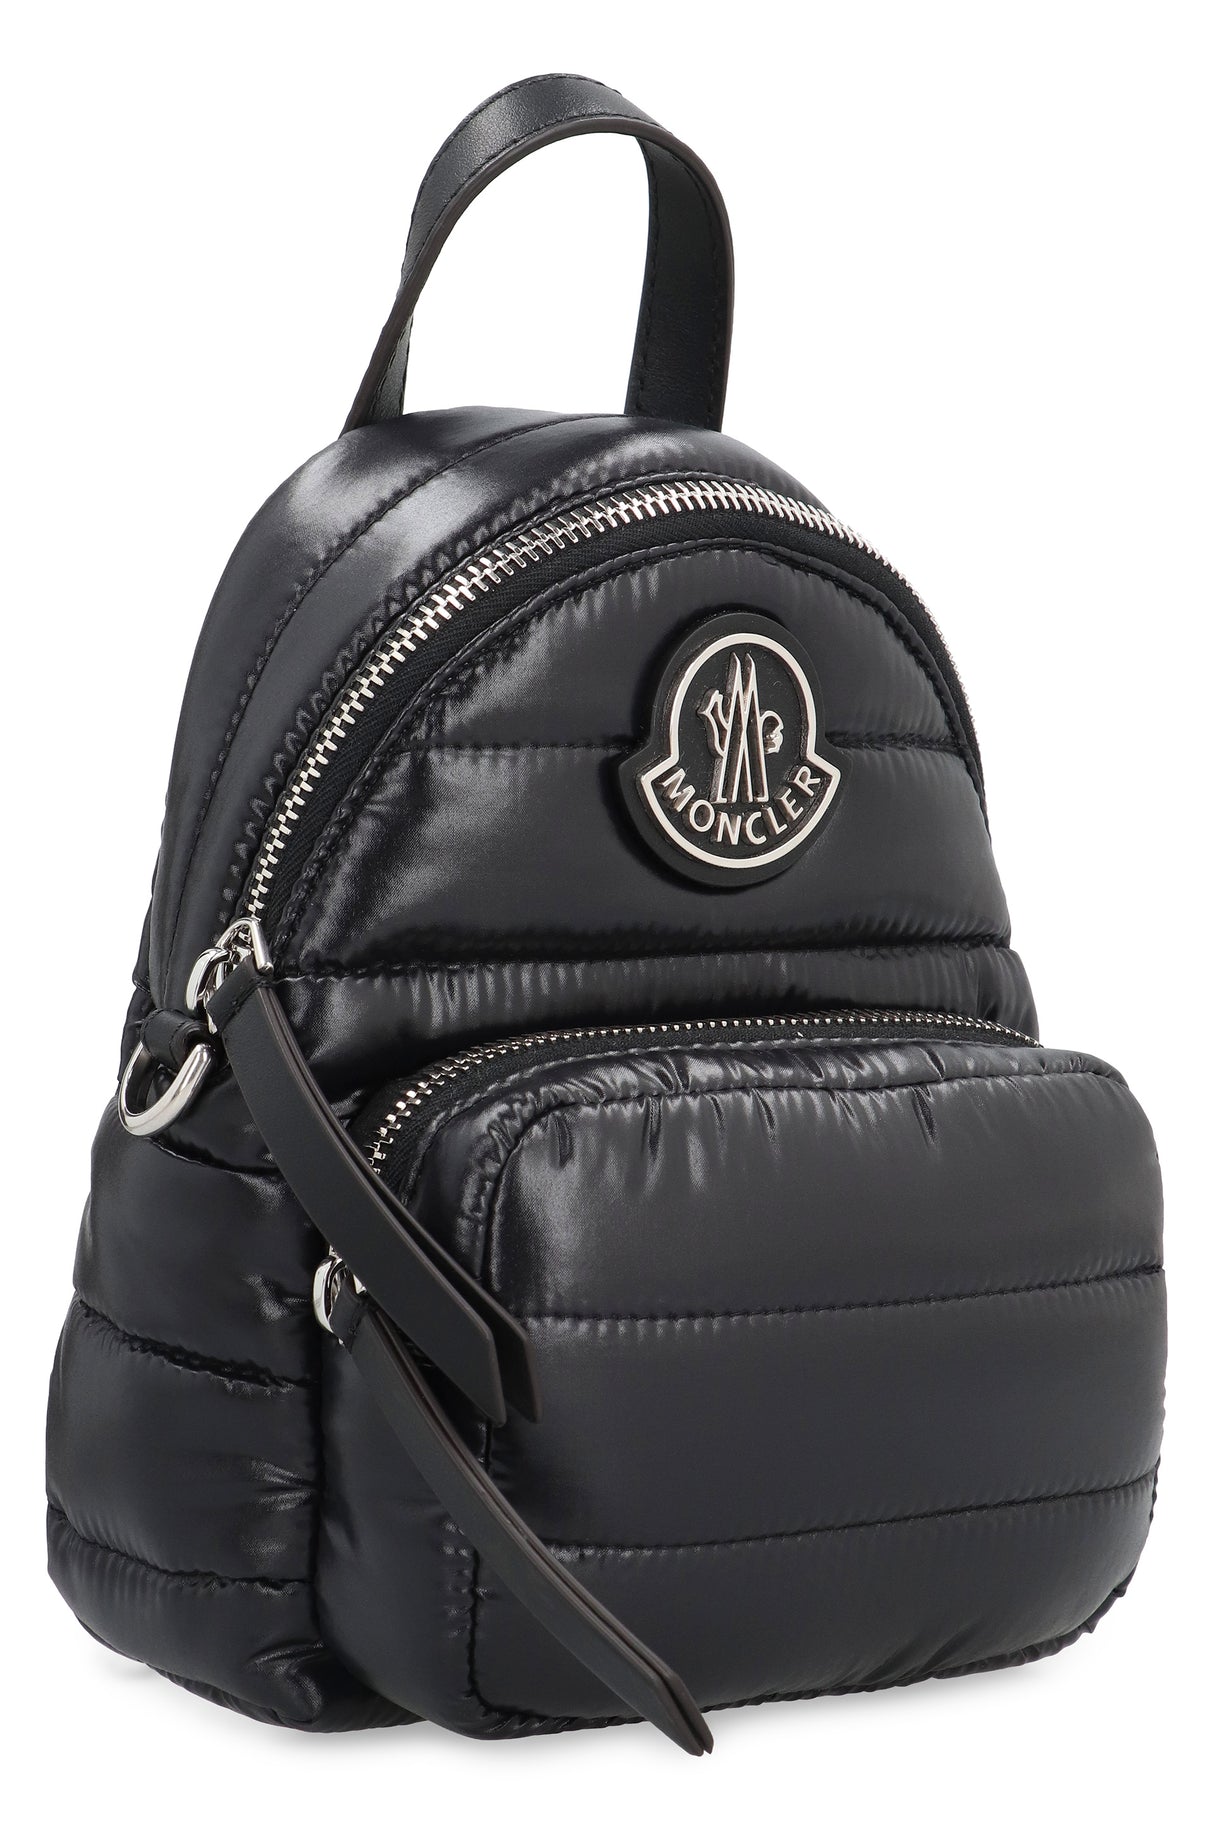 Túi xách Nylon đen cho phụ nữ - Bao bọc lớp đệm, chi tiết da, túi phía trước, dây đeo có thể tháo rời